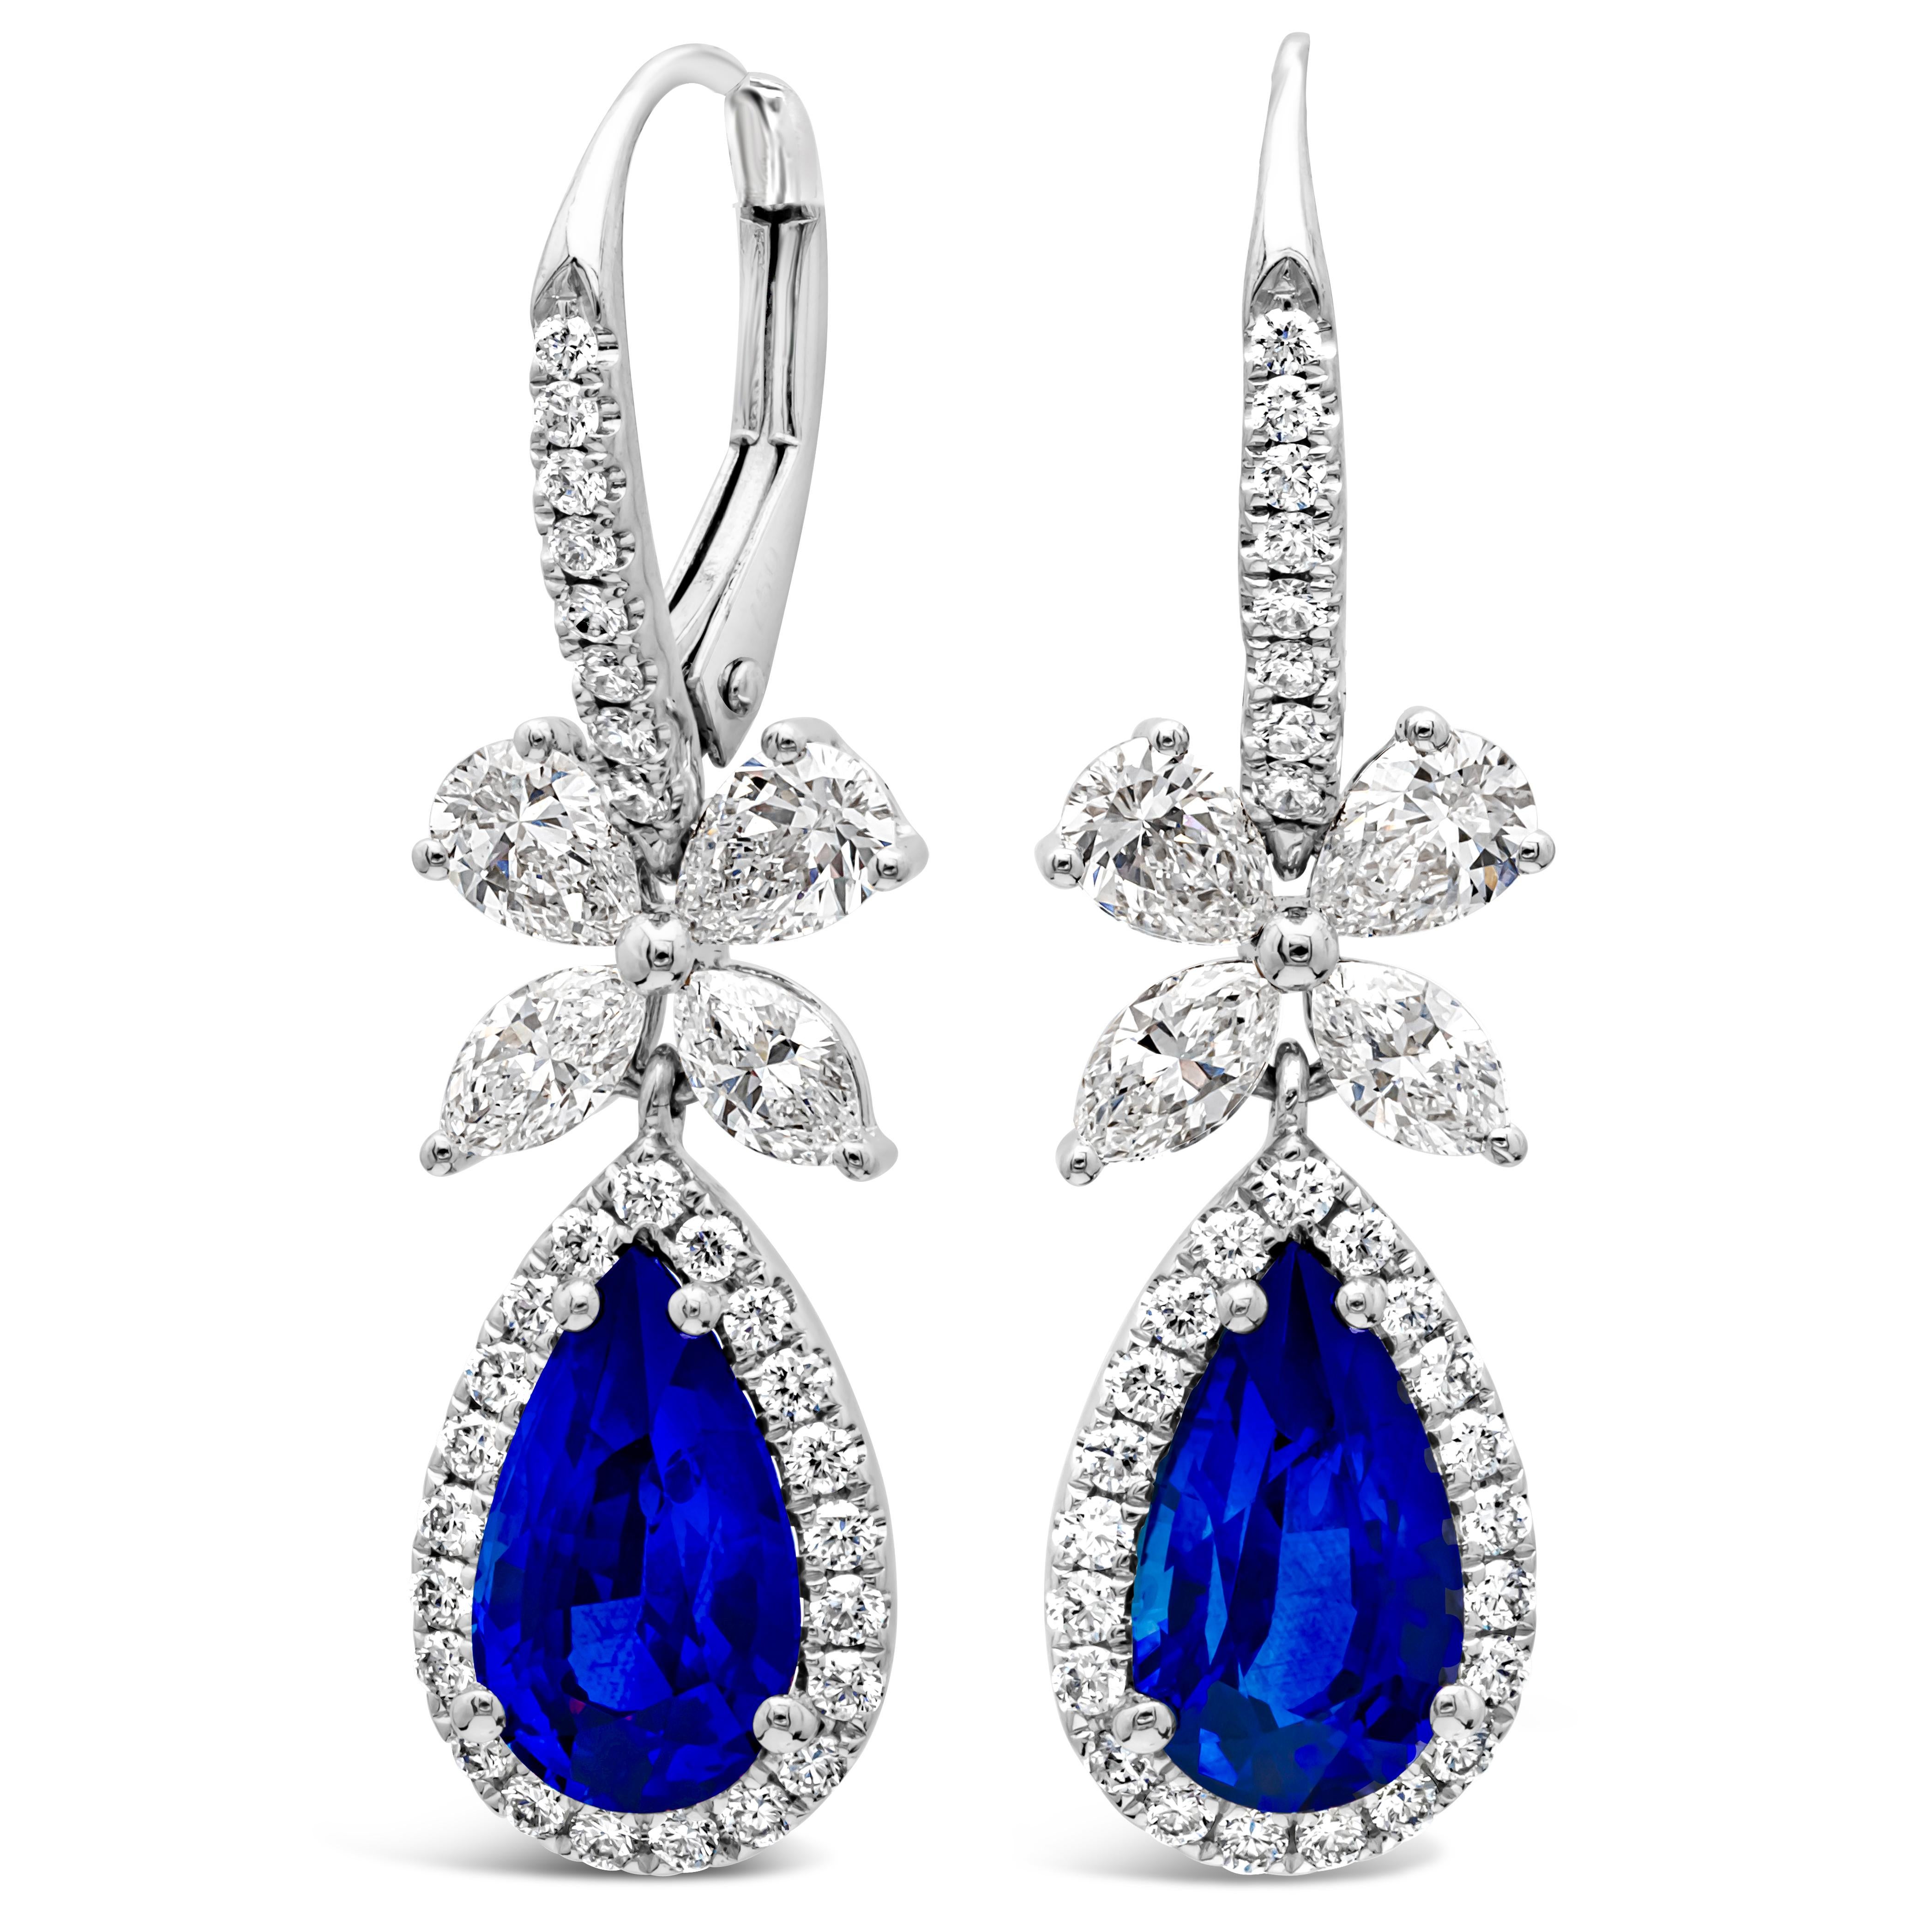 Dieses wunderschöne Paar Ohrhänger besteht aus einem birnenförmigen, farbenprächtigen blauen Saphir mit einem Gesamtgewicht von 2,69 Karat, der von einer Reihe runder Brillanten in einem Halo-Design umgeben ist. Eine bogenförmige Figur aus Diamanten